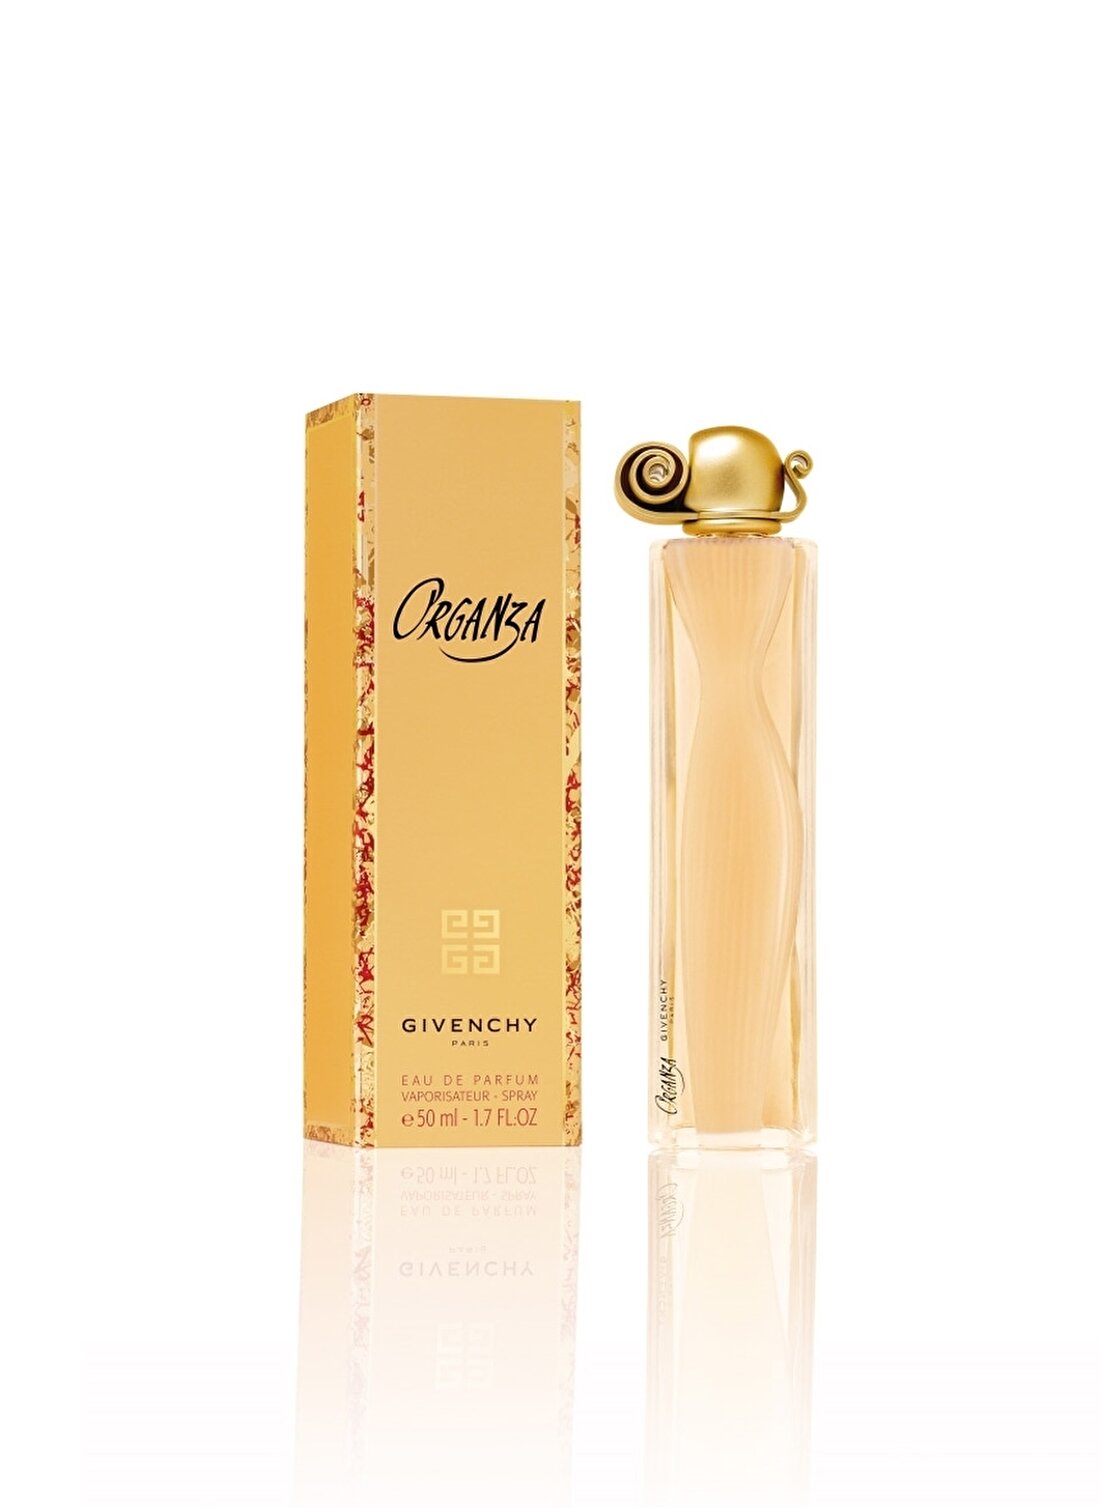 Givenchy Organza Edp Spray 50 Ml Kadın Parfüm